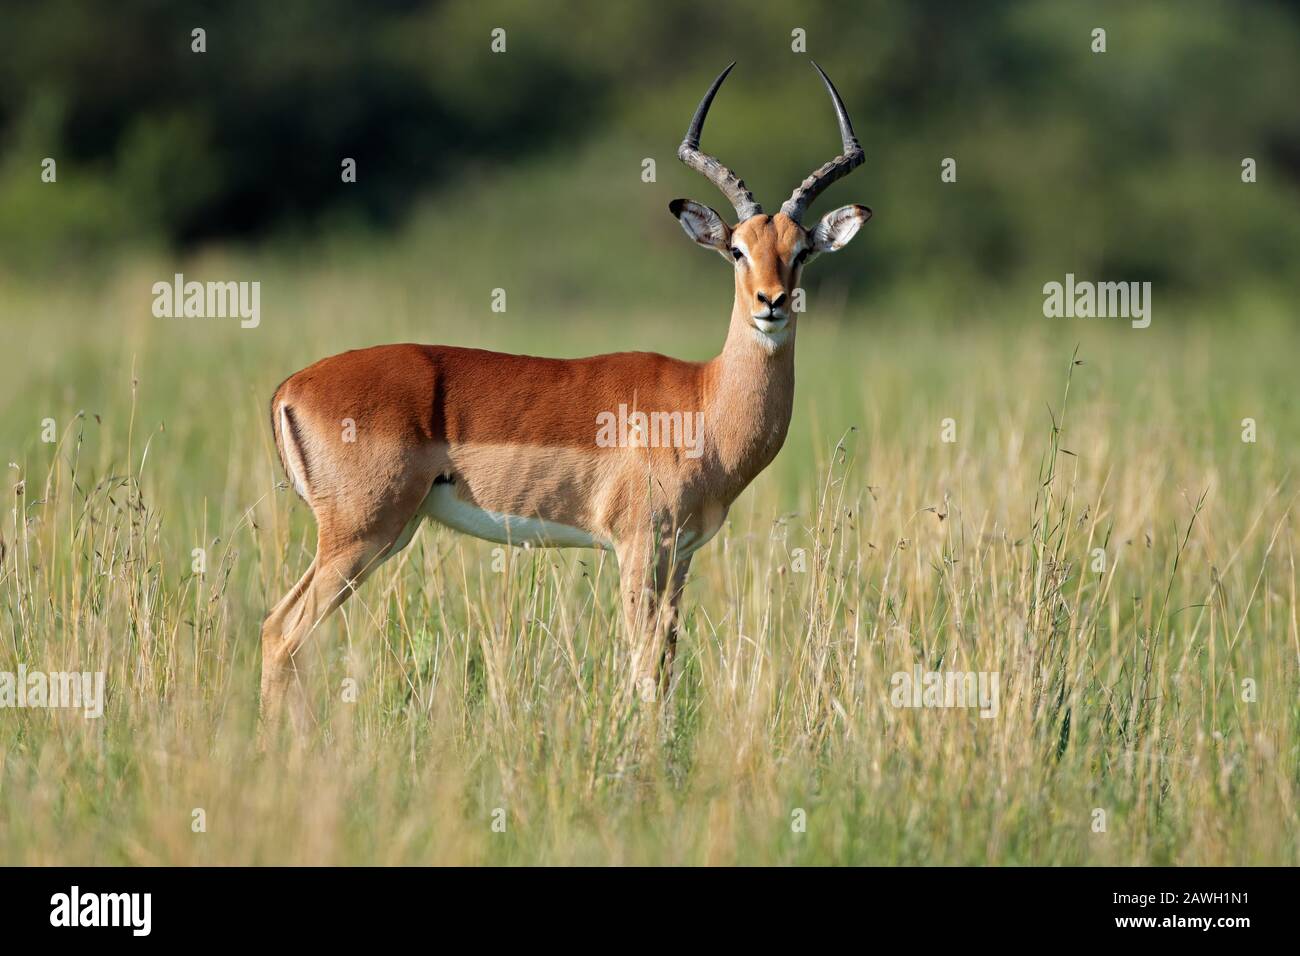 L'antilope de l'impala mâle (Aepyceros melampus) dans l'habitat naturel, en Afrique du Sud Banque D'Images